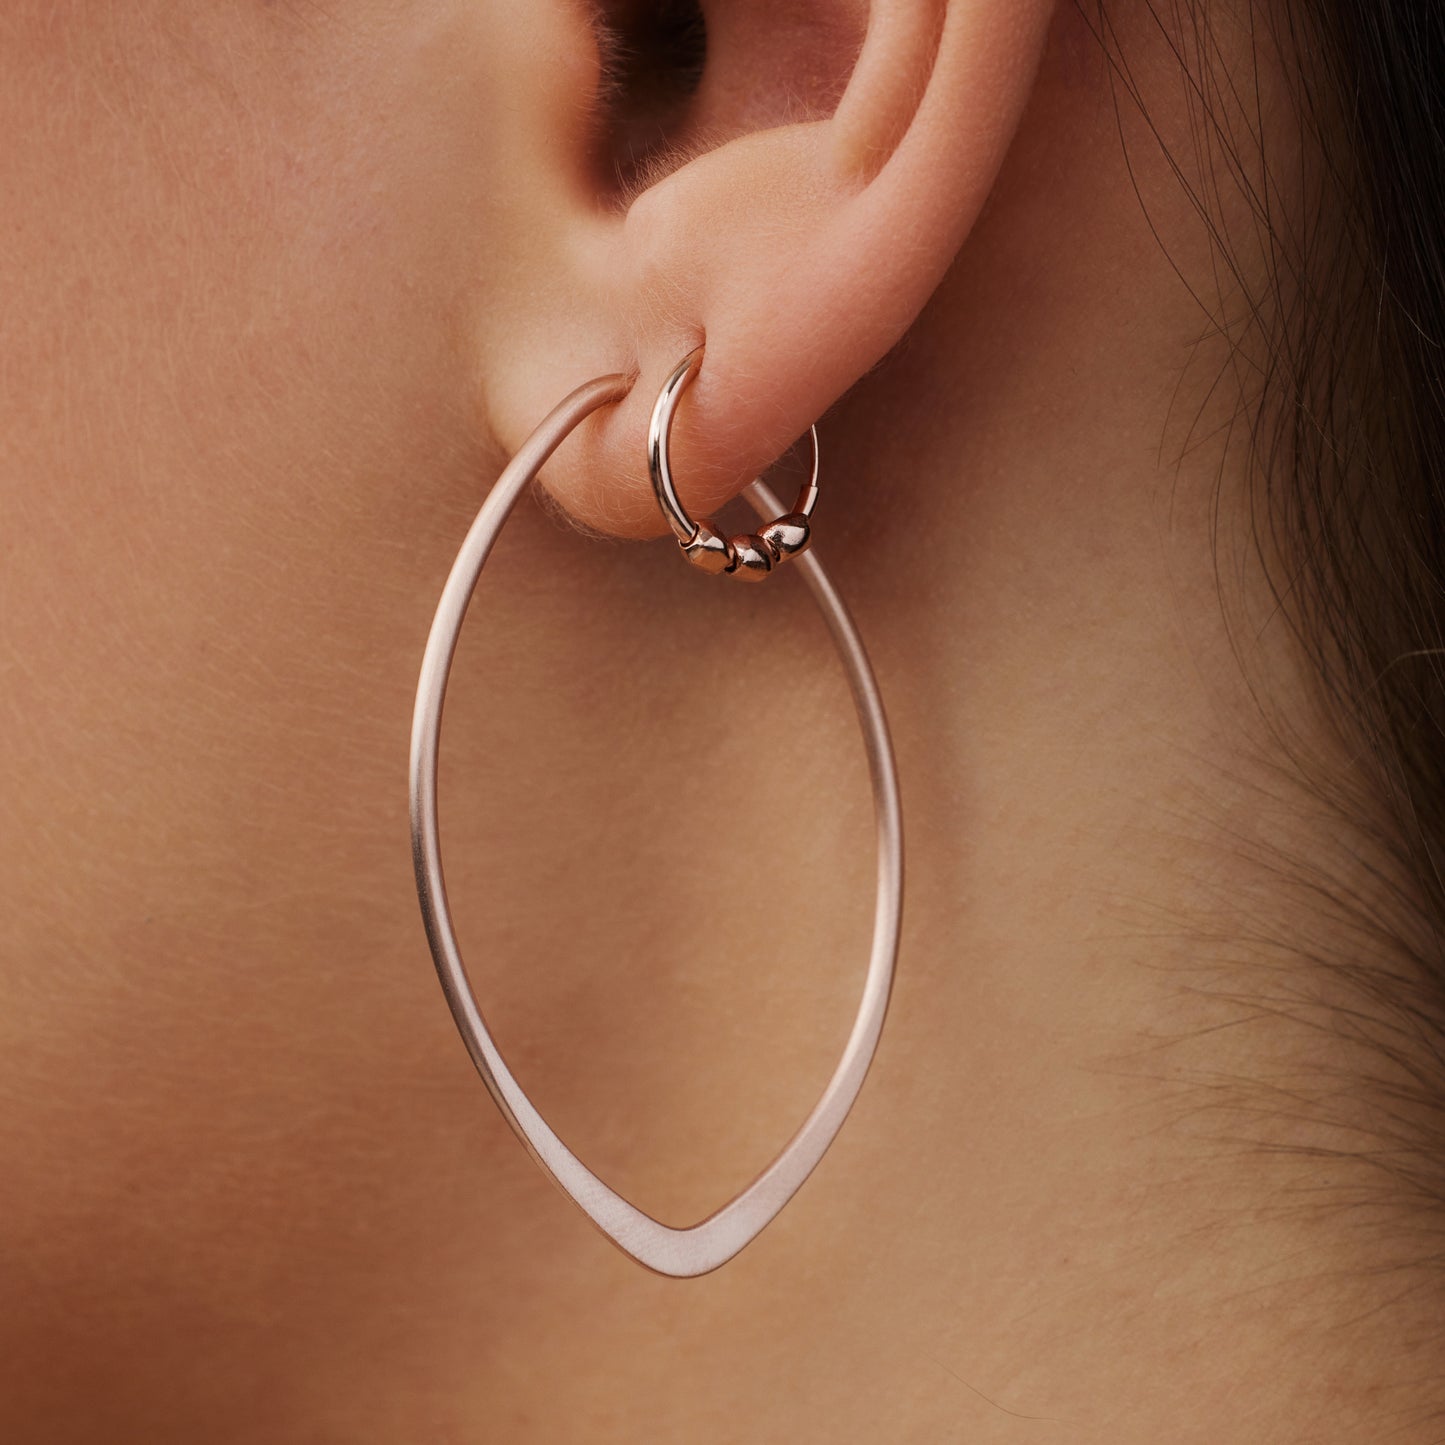 Sisterhood Feminine 925 sterling silver rose gold plated hoop earrings